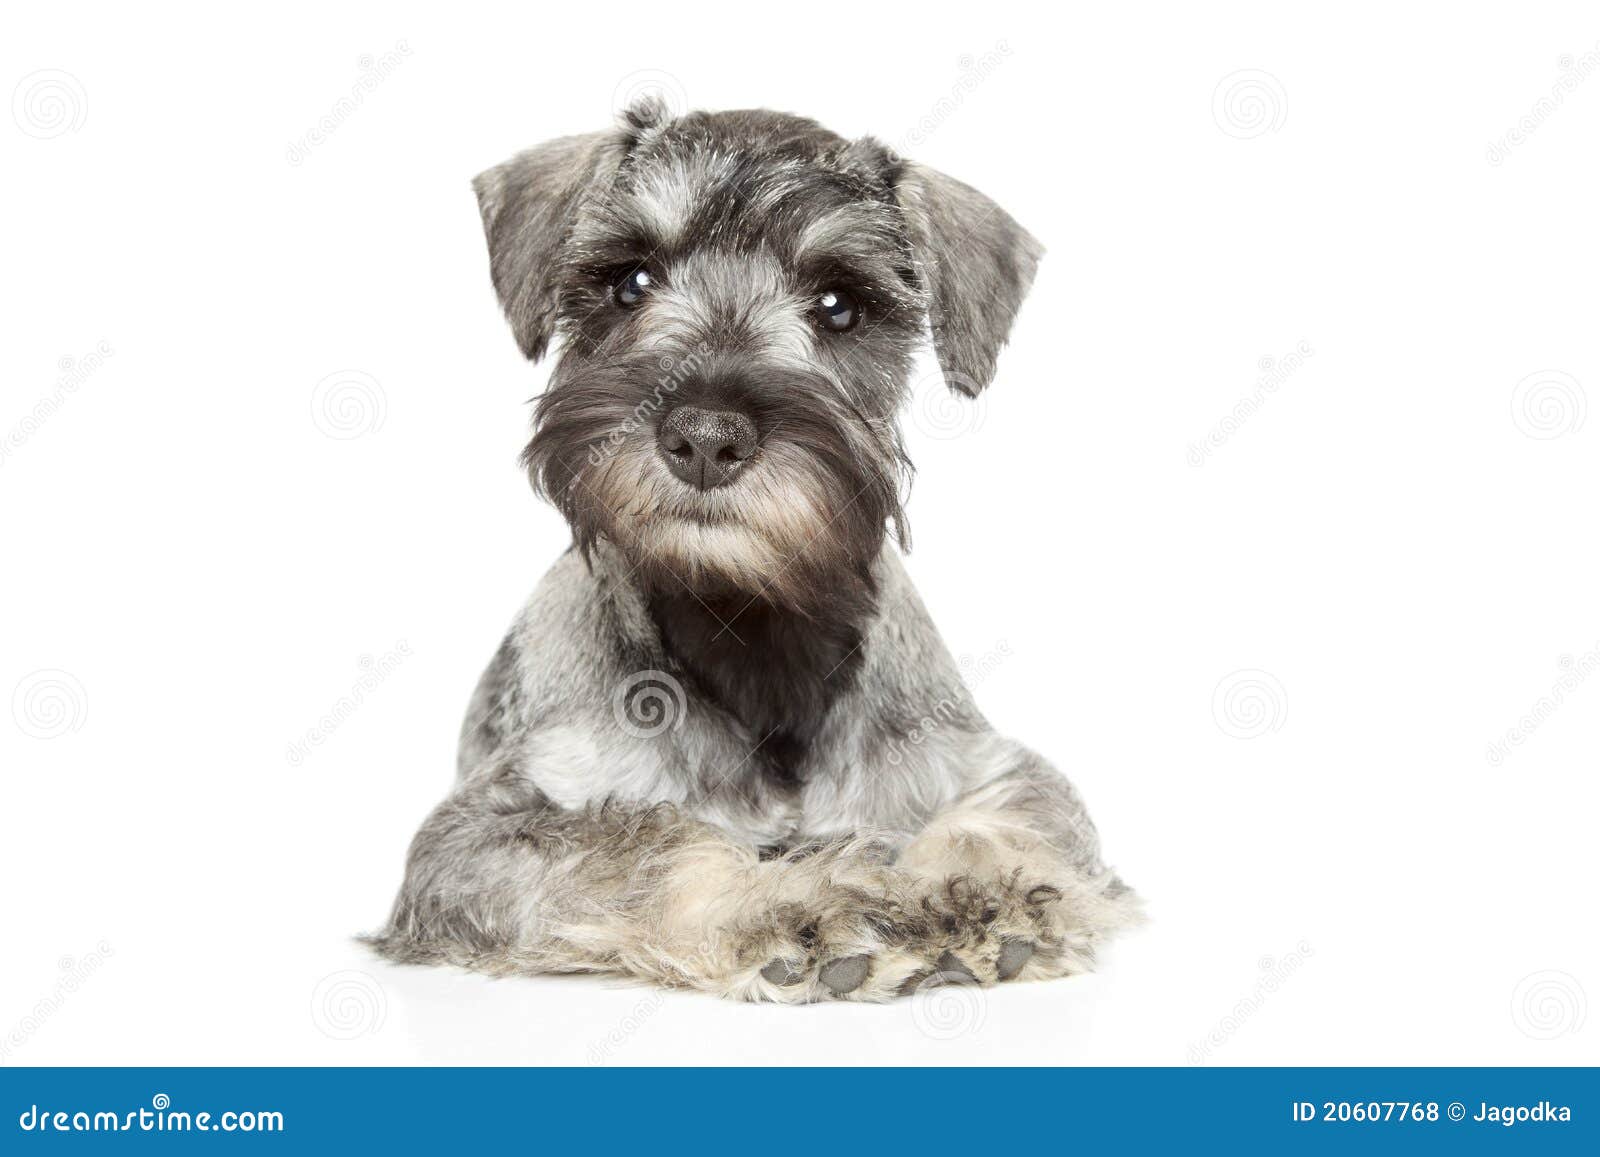 miniature schnauzer puppy